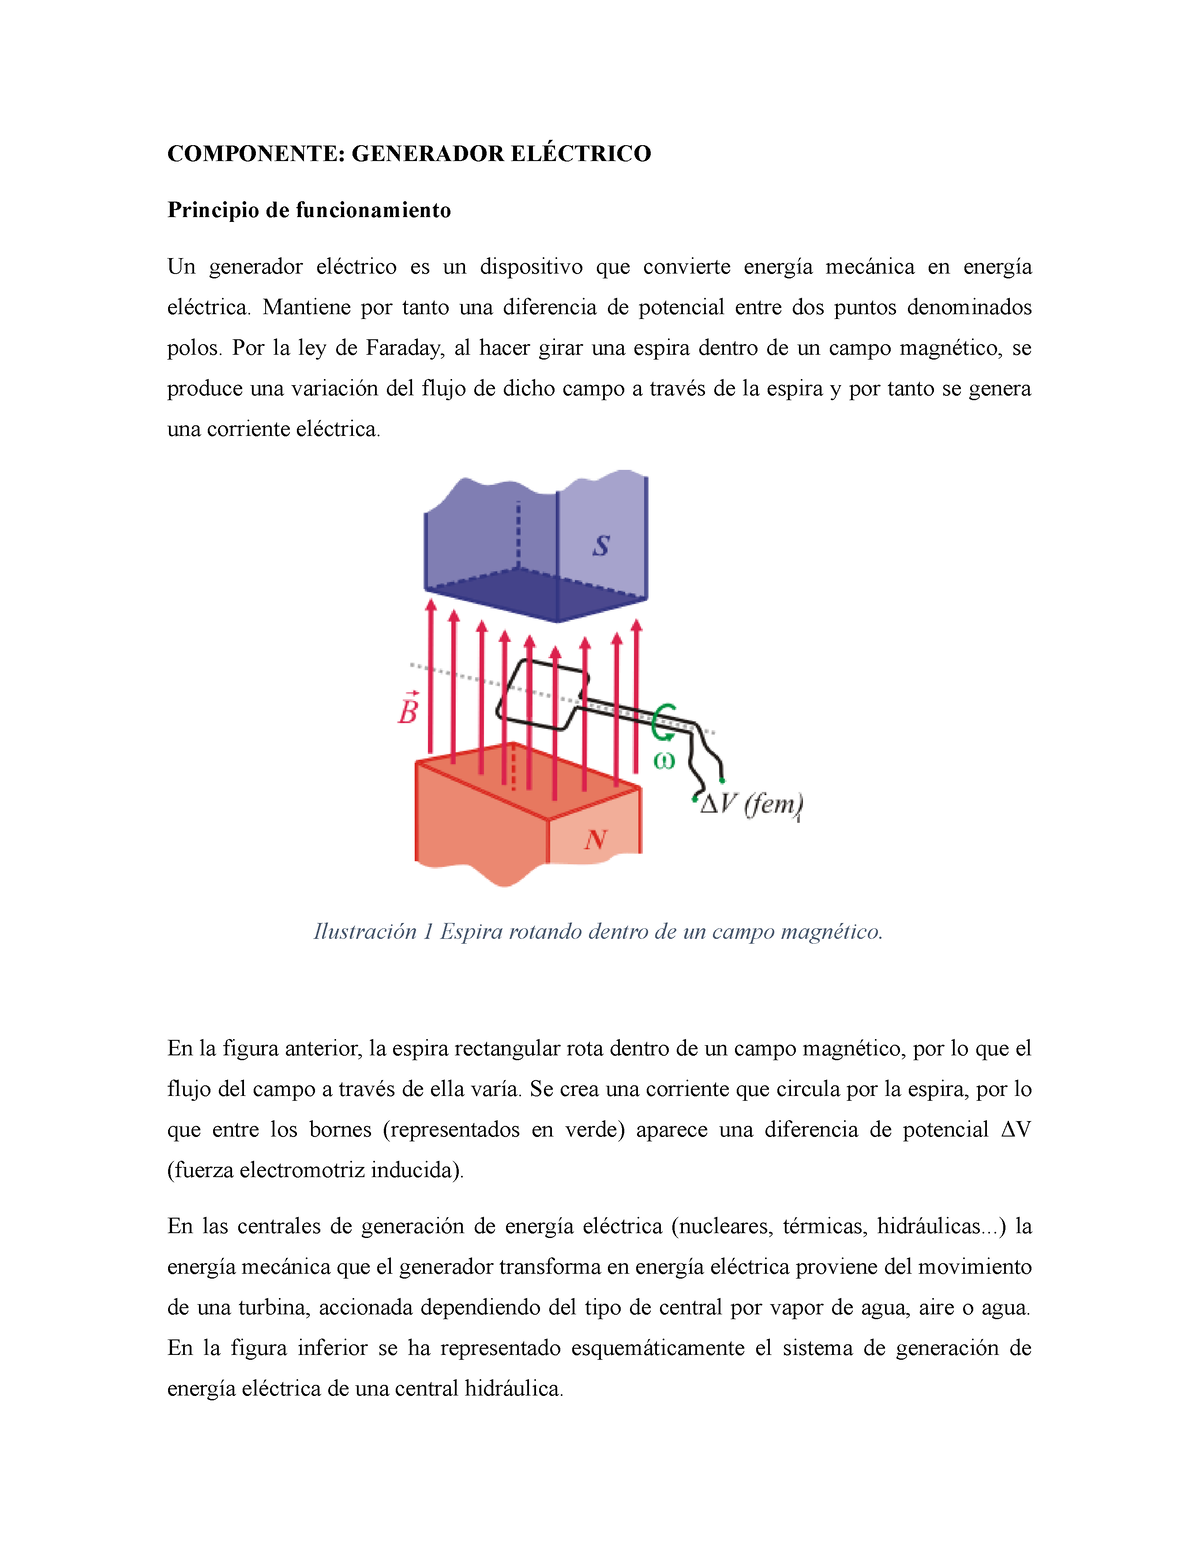 mineral Tratado Complaciente Generador eléctrico - COMPONENTE: GENERADOR ELÉCTRICO Principio de  funcionamiento Un generador - Studocu